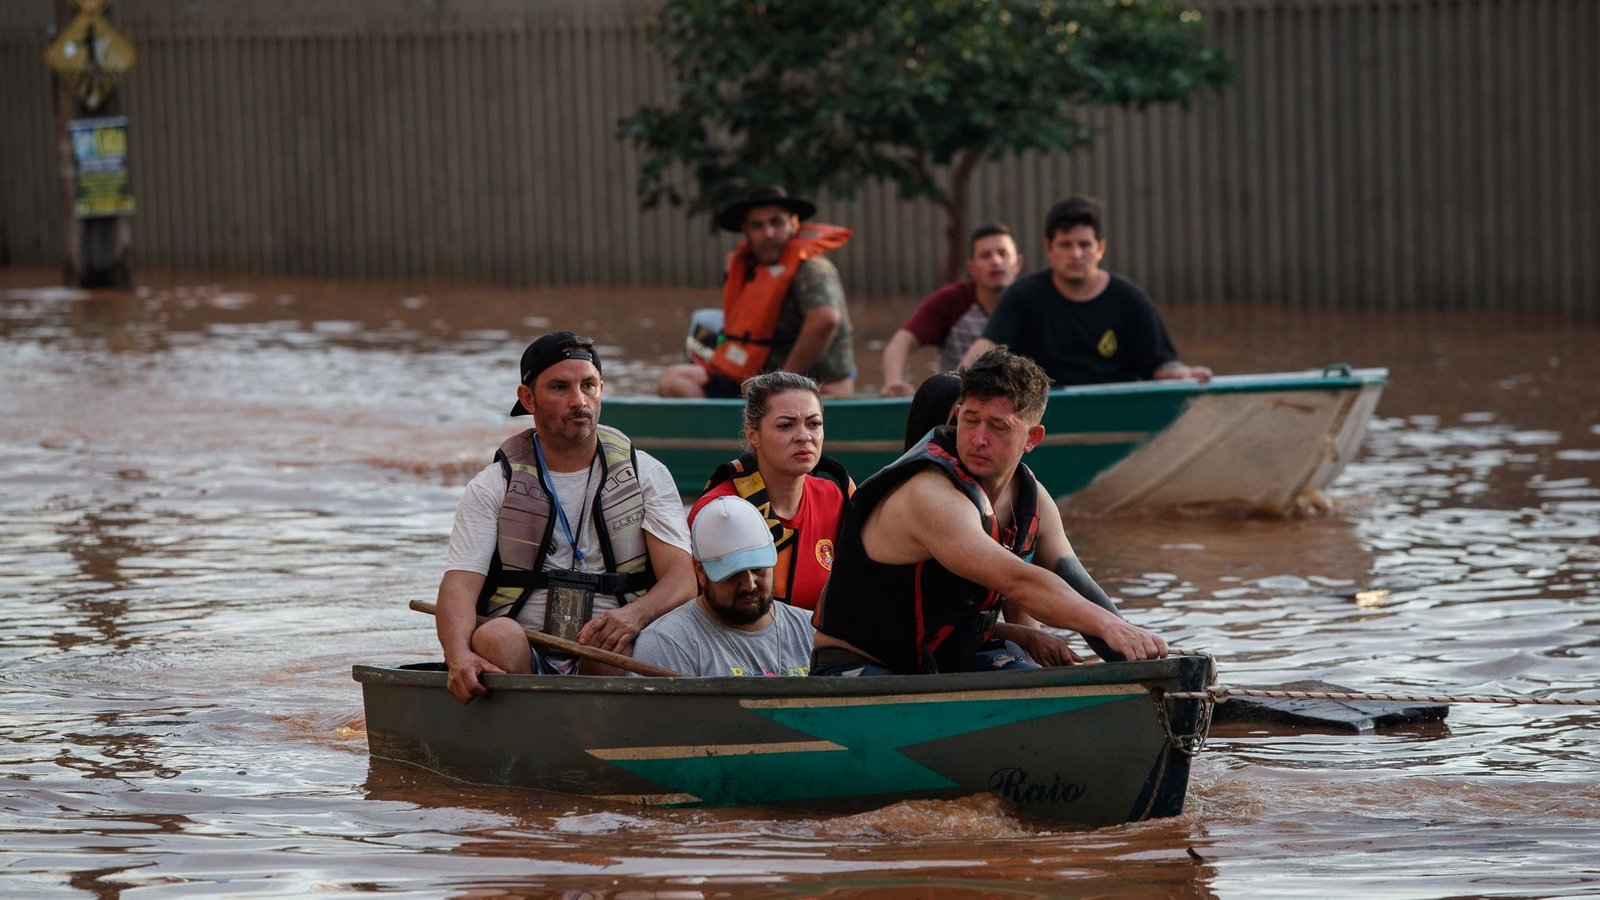 Mitglieder eines Rettungsteams bei der Evakuierung von Menschen, die von einer Überschwemmung betroffen sind.Foto: Claudia Martini/XinHua/dpa